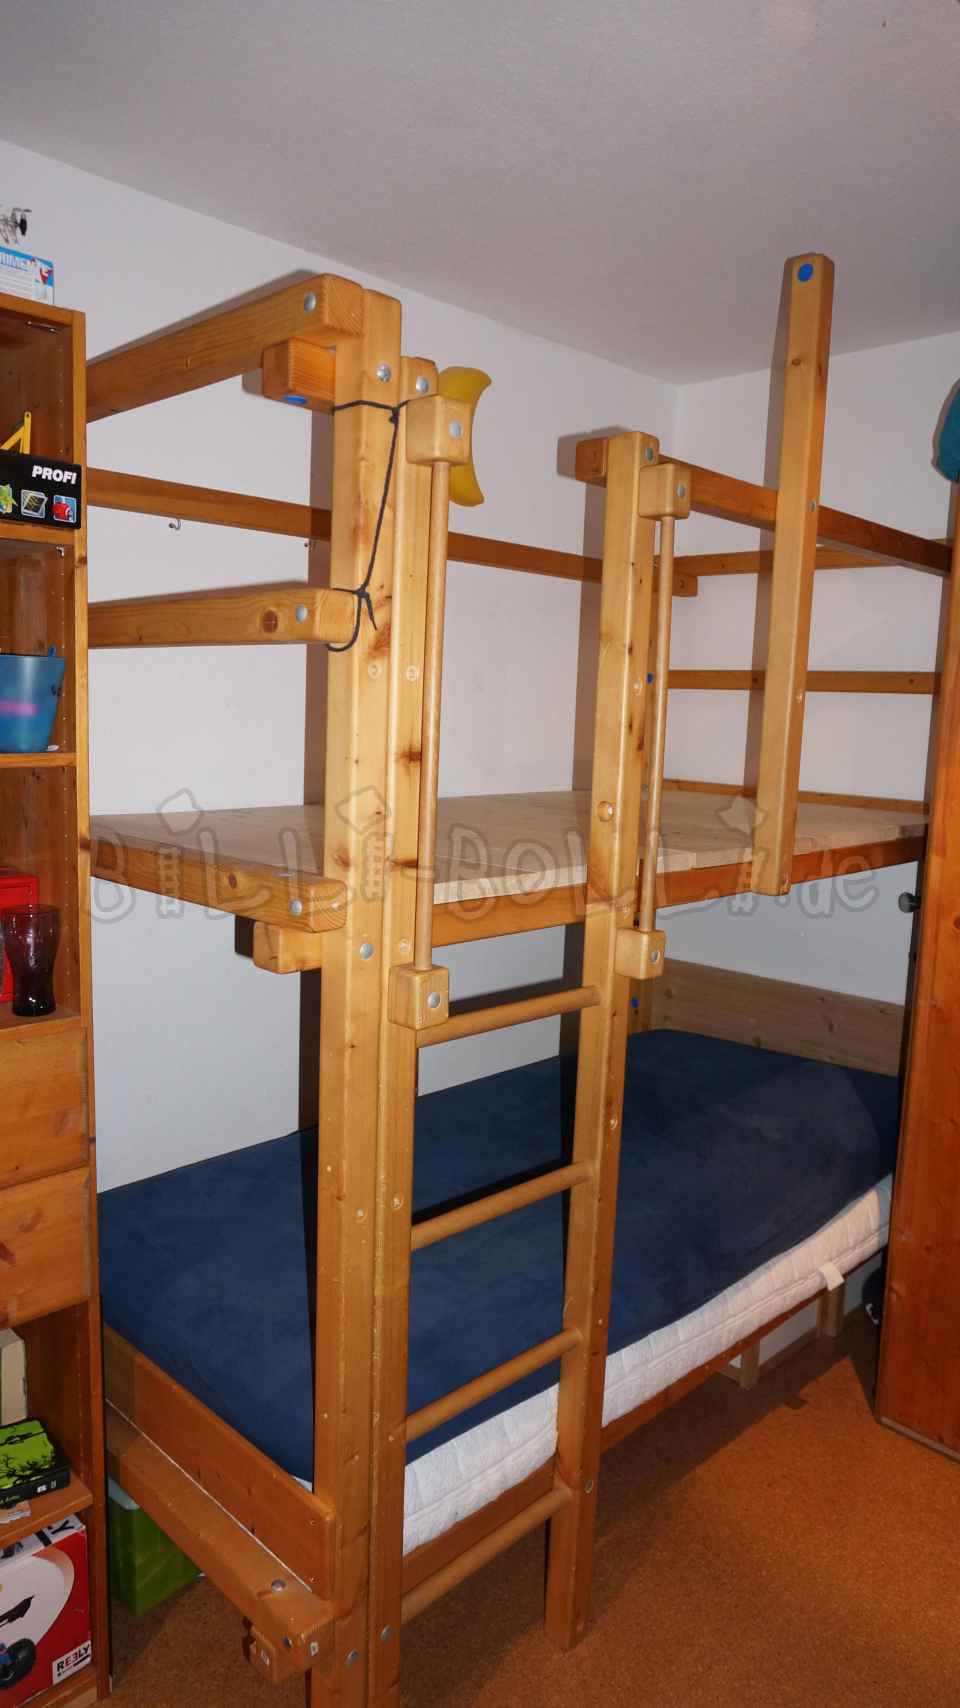 मचान बिस्तर, 90 x 200 सेमी, तेल से सना हुआ लच्छेदार स्प्रूस (कोटि: मचान बिस्तर का इस्तेमाल किया)